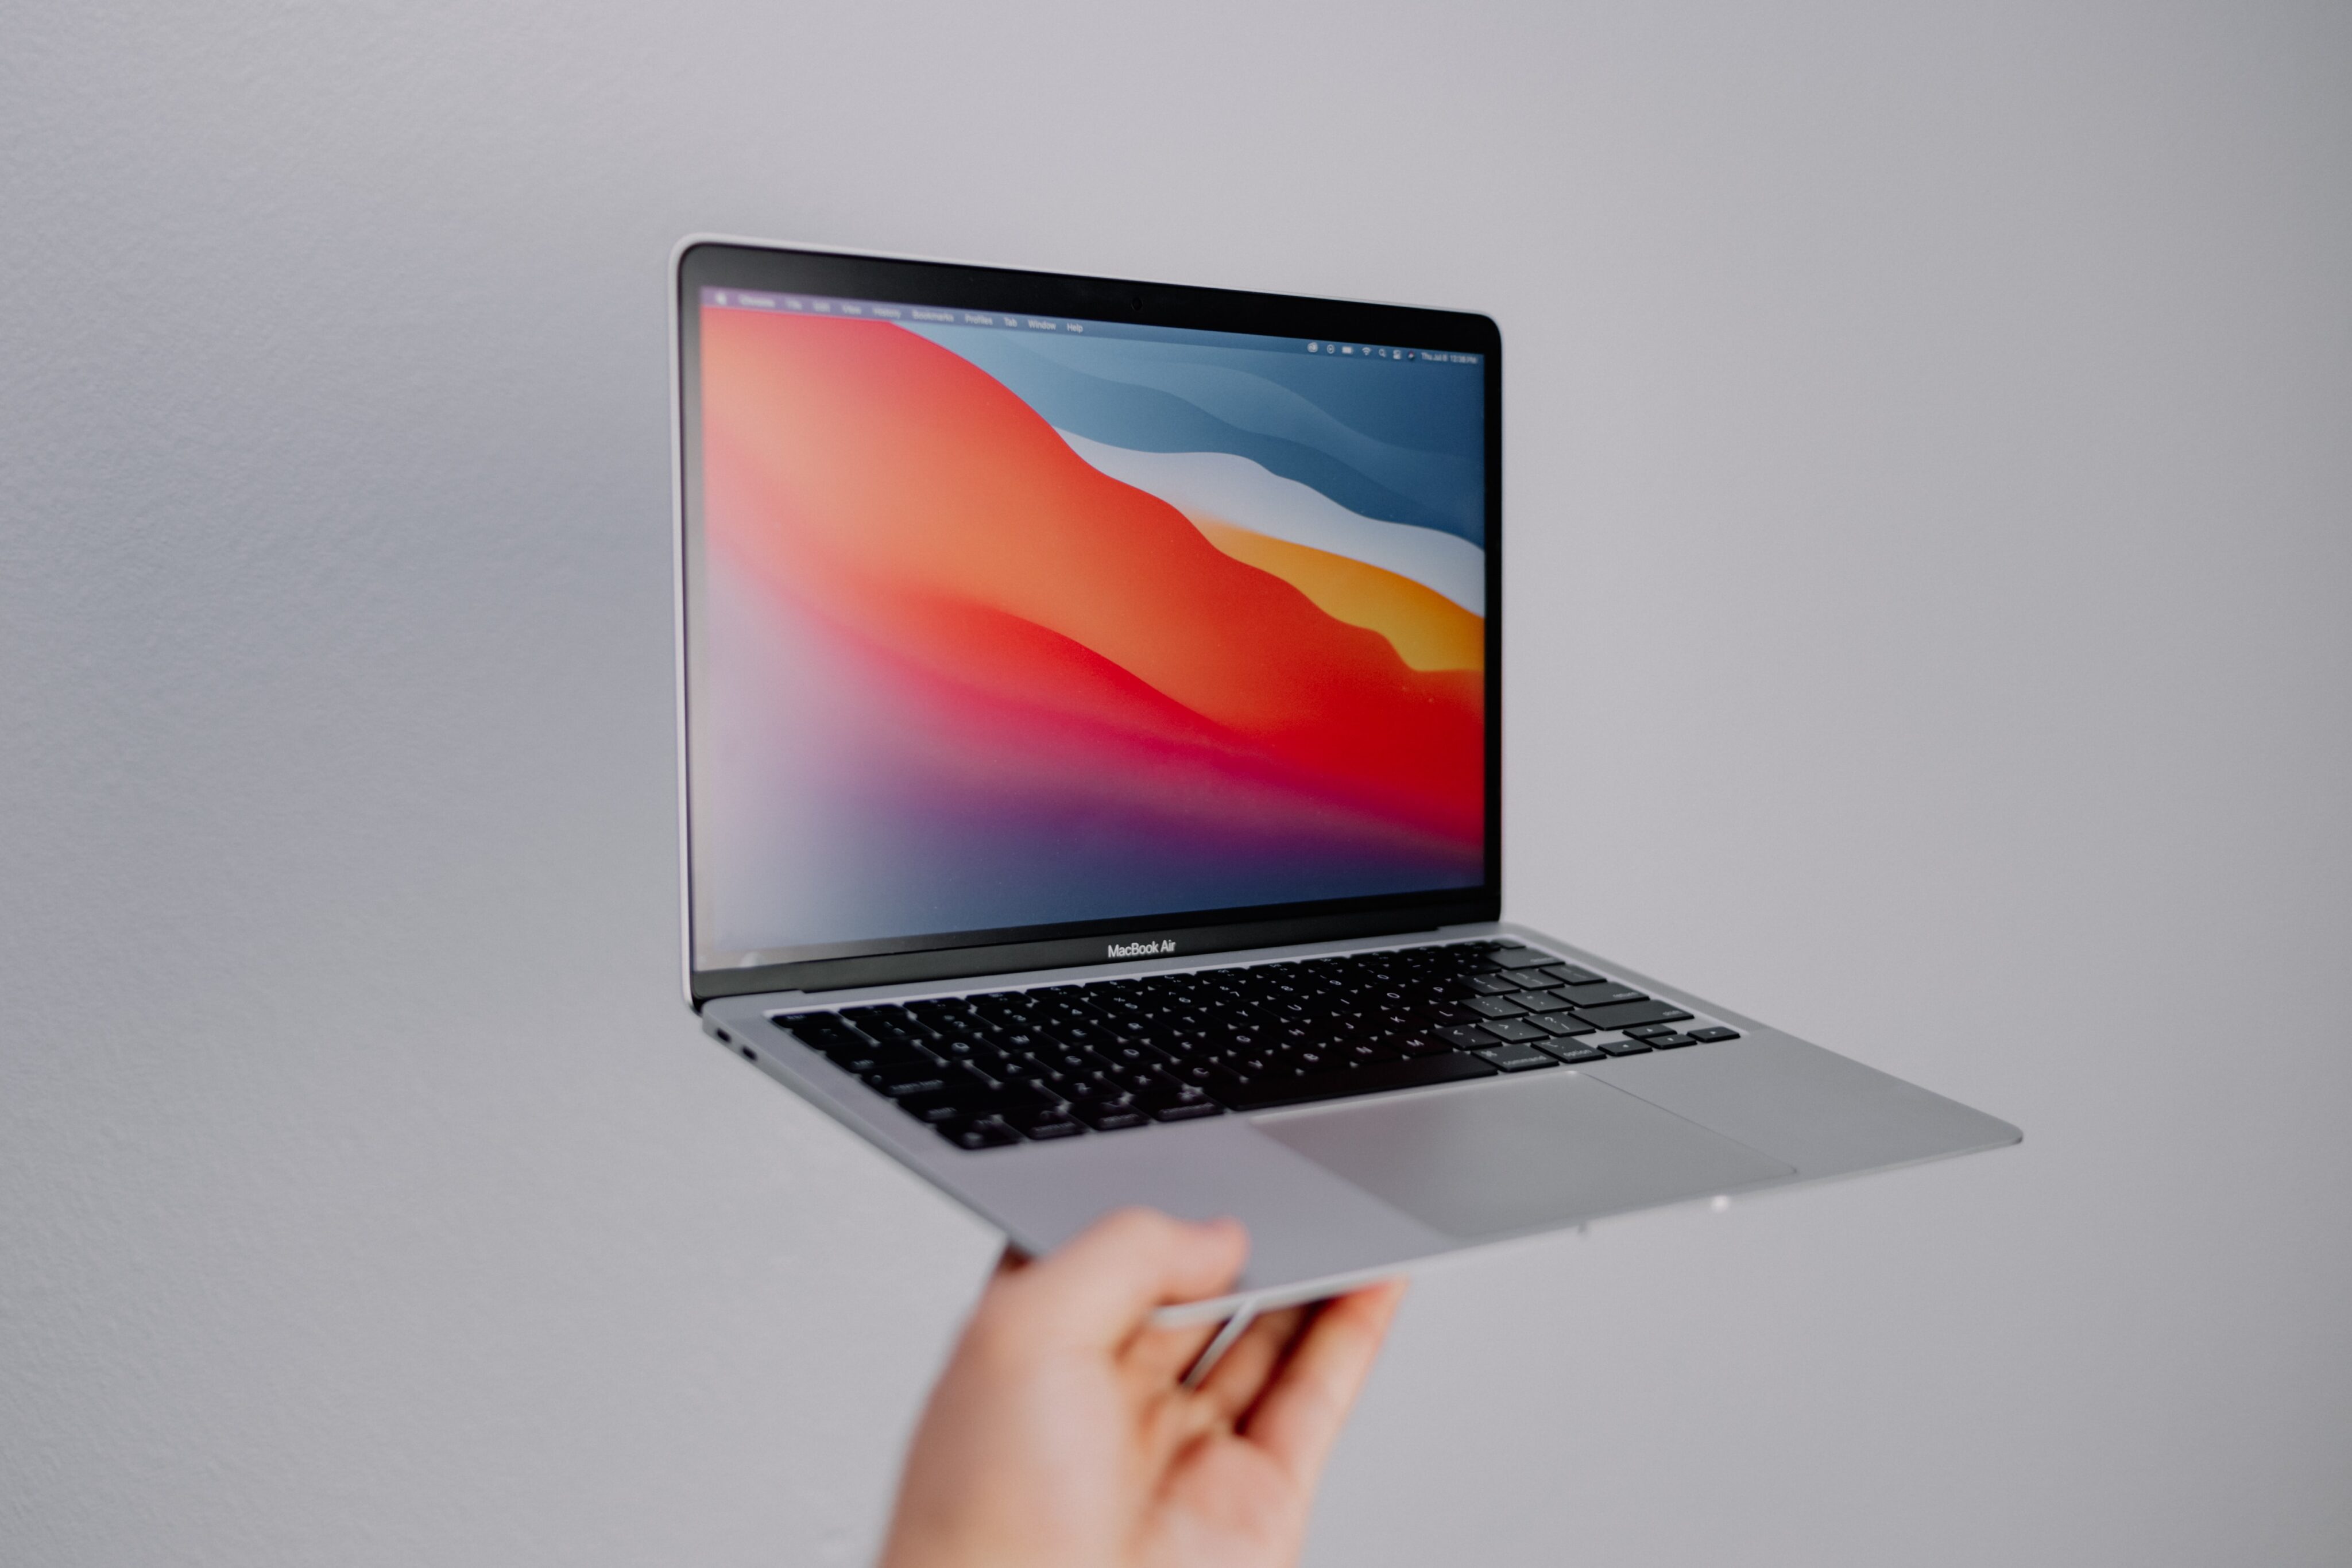 Oferta: MacBook Air (M1) com desconto de até 33% [atualizado]- MacMagazine